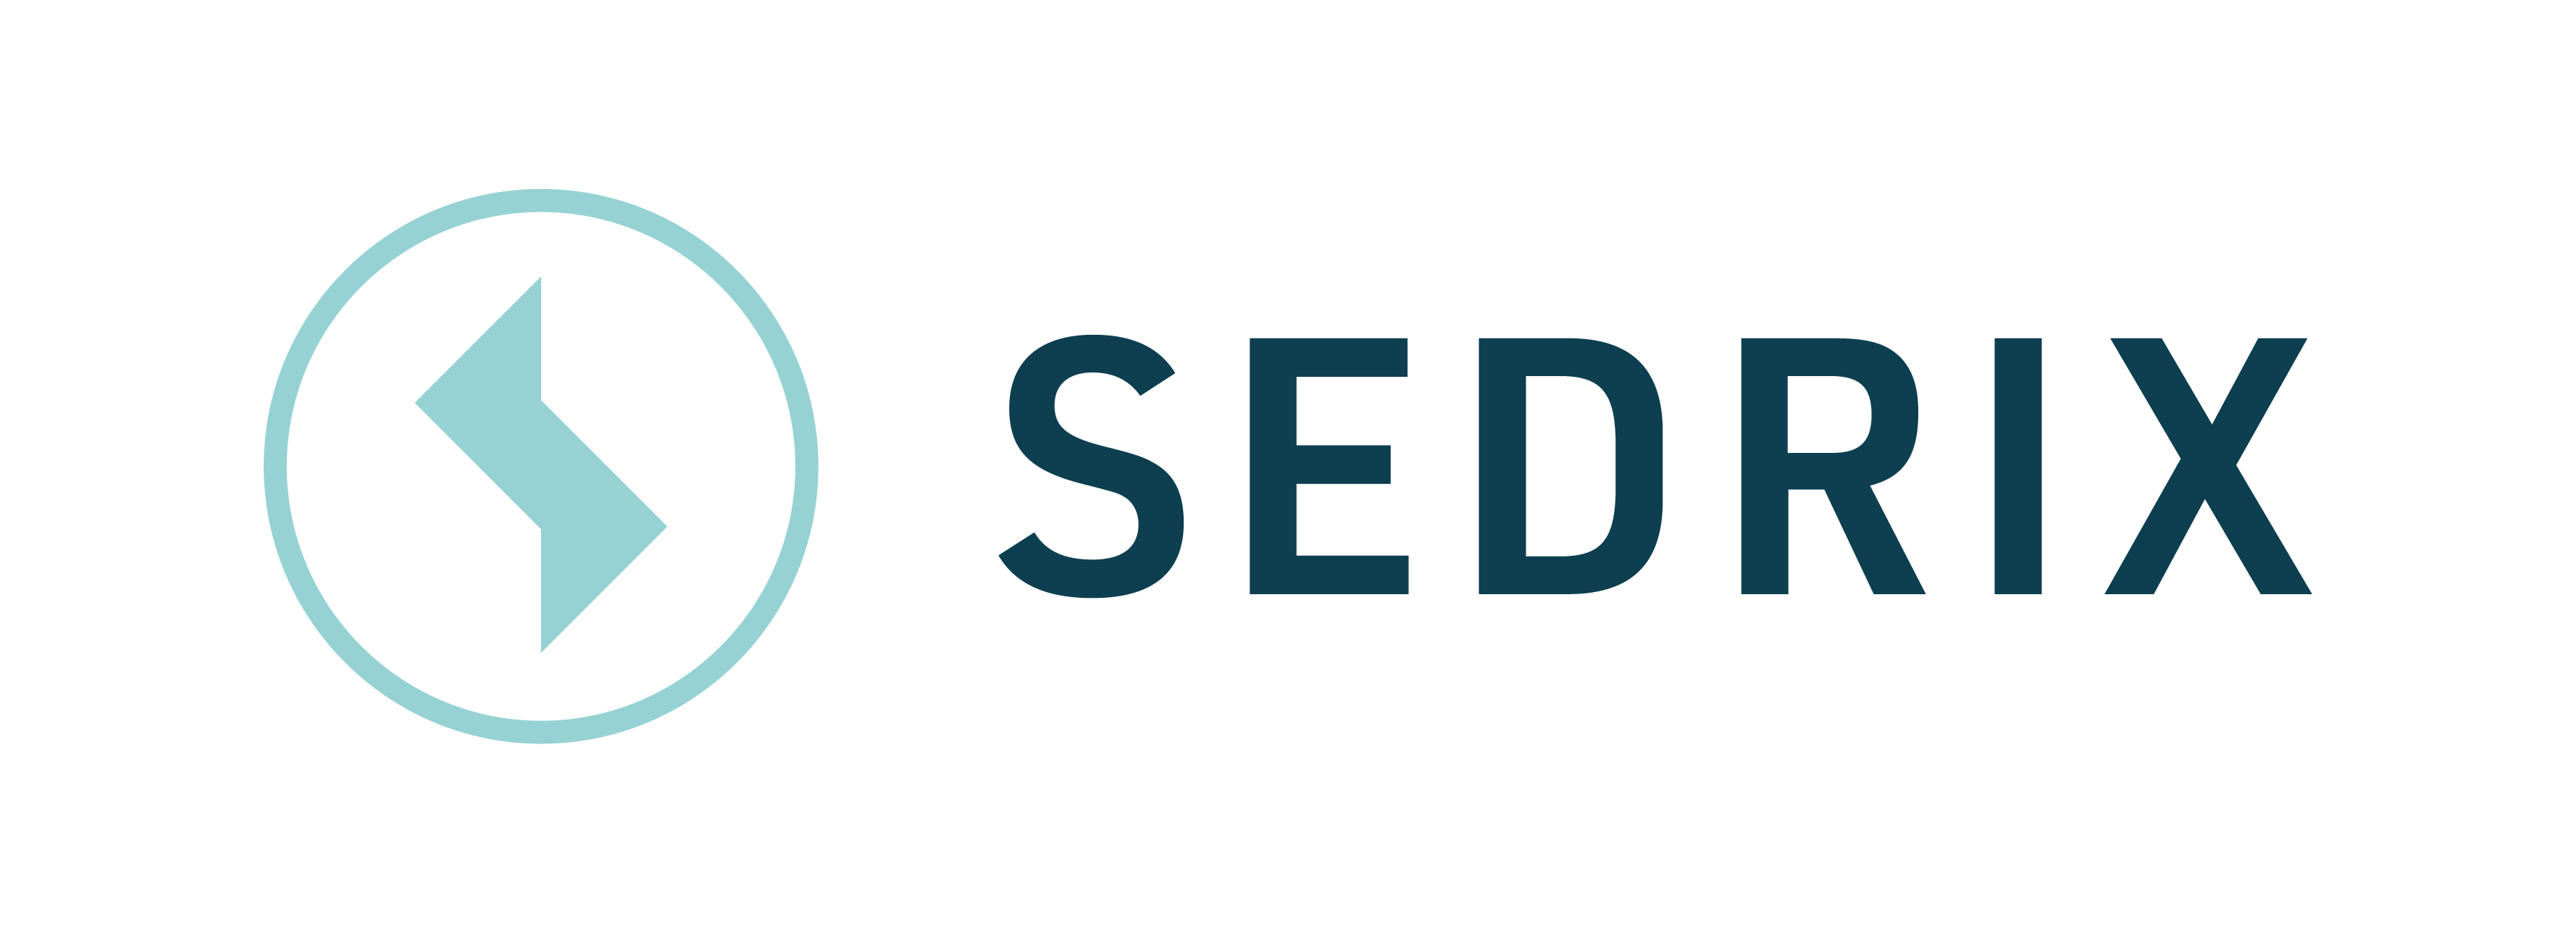 SEDRIX - Smart Data Center